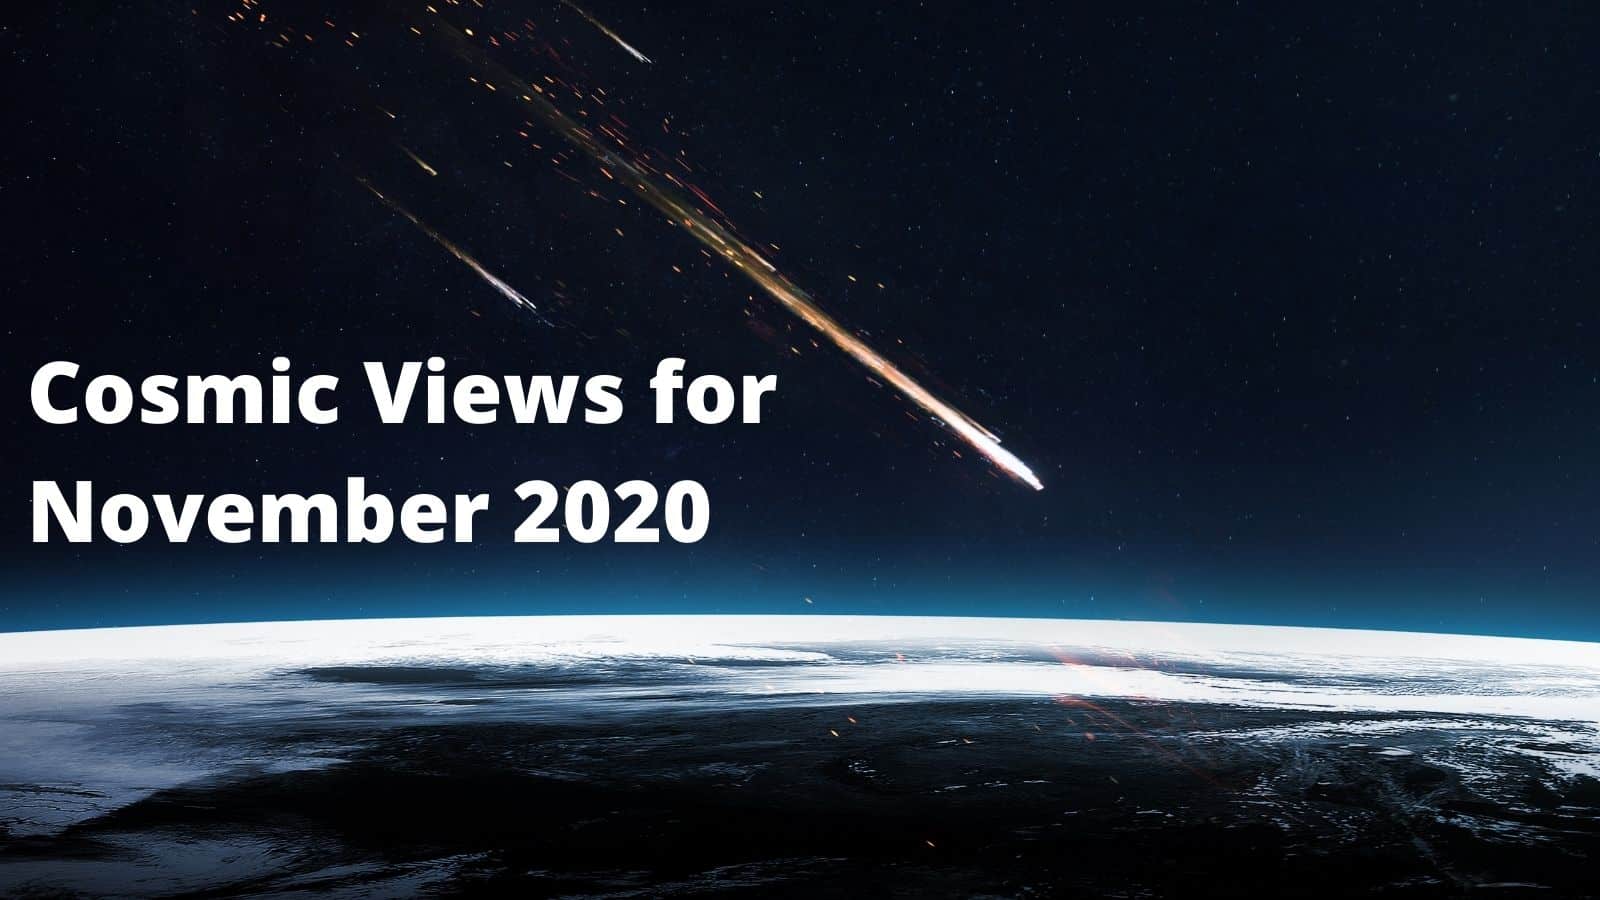 Cosmic Views for November 2020